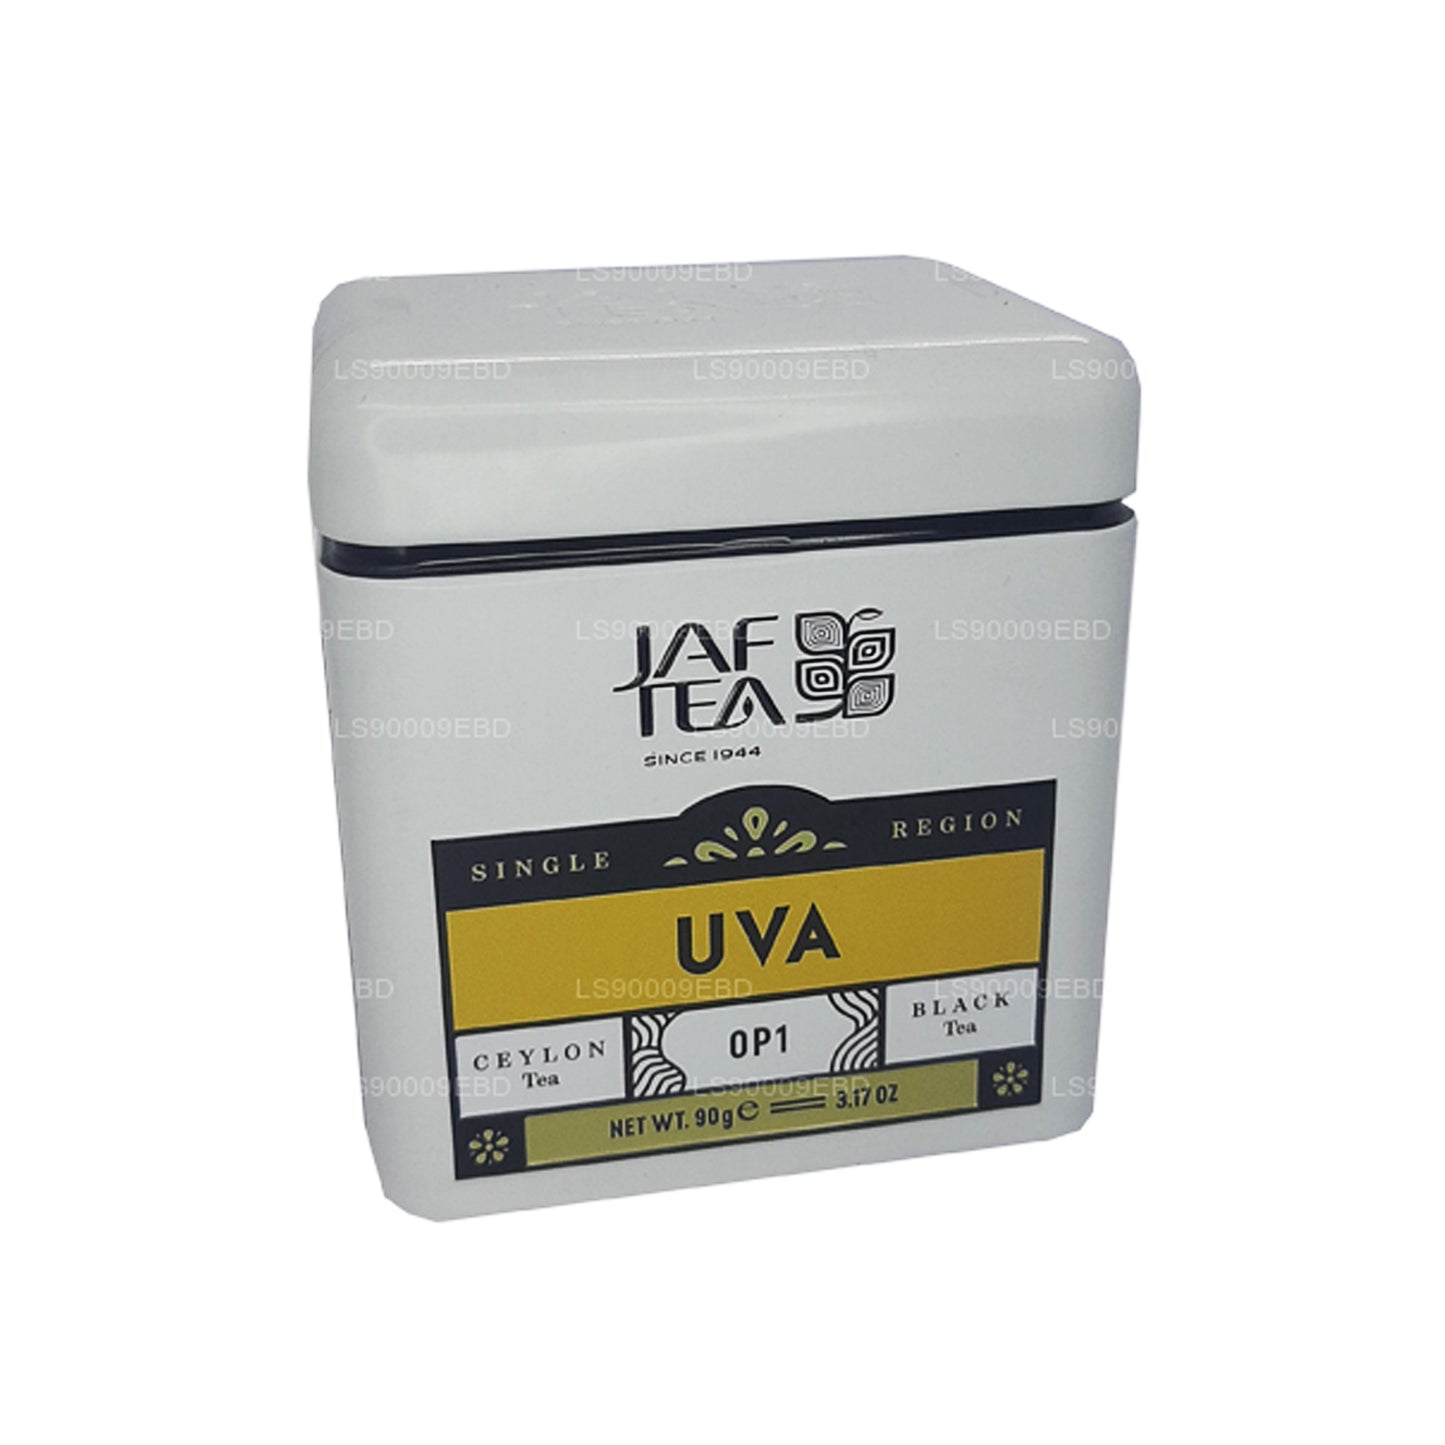 Jaf Tea Single Region Collection Uva OP1 blikje (90 g)